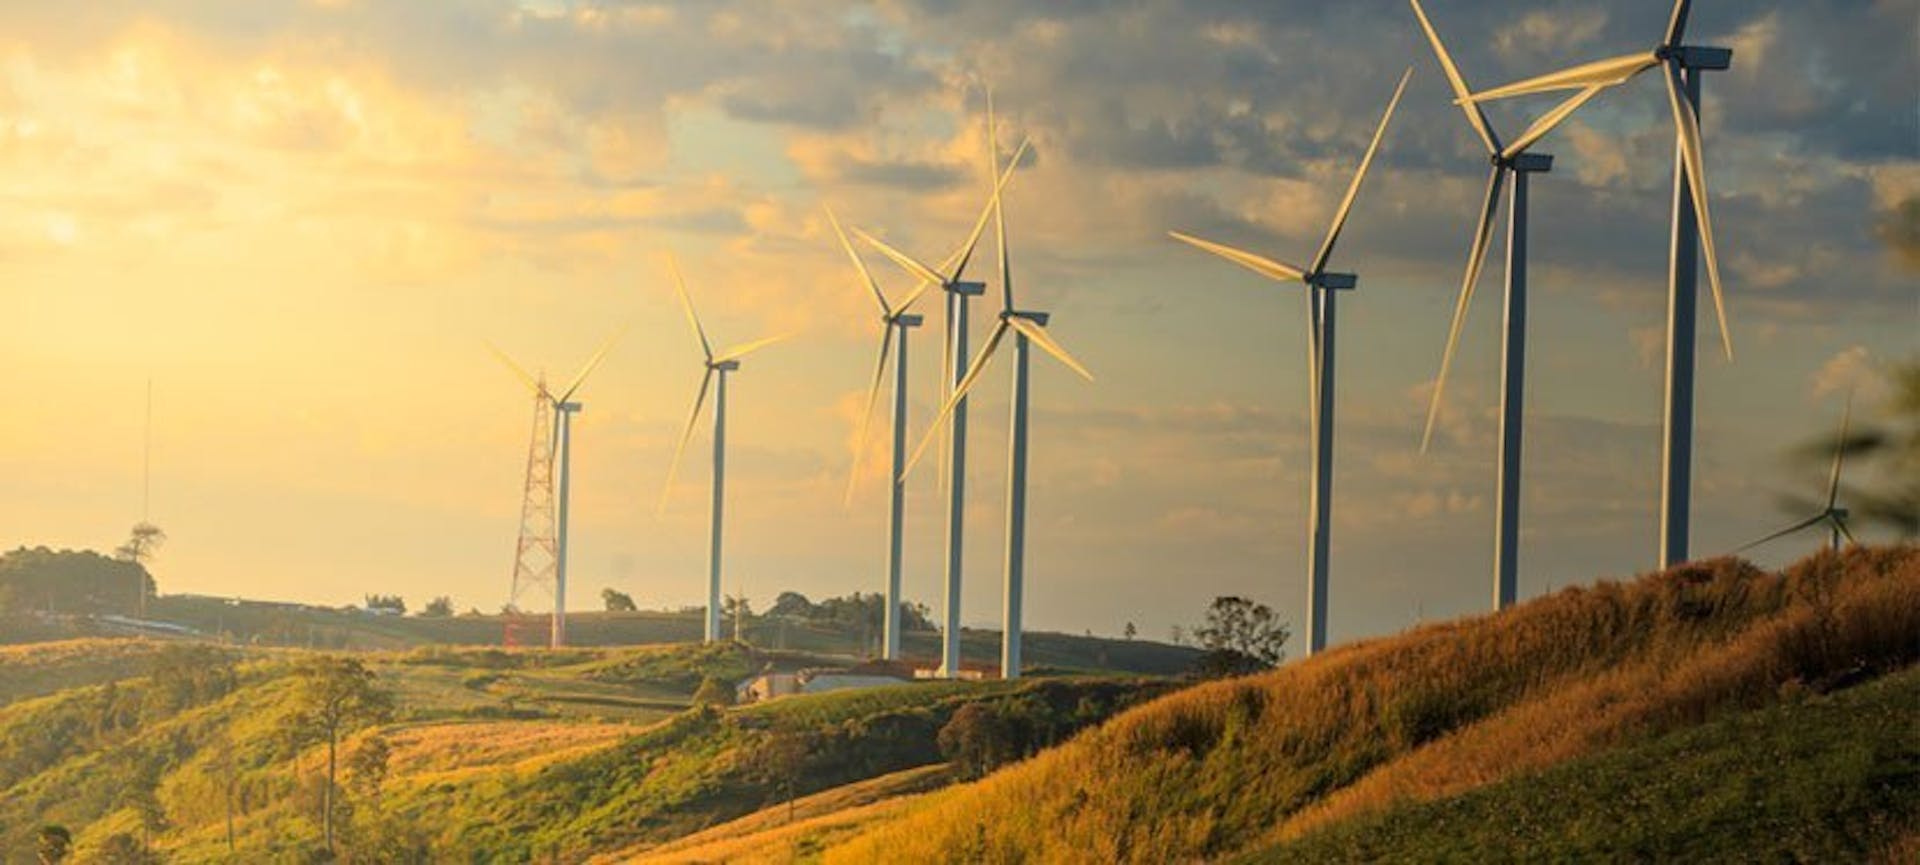 Une rangée d'éoliennes, appréciées des fournisseur d'électricité renouvelable